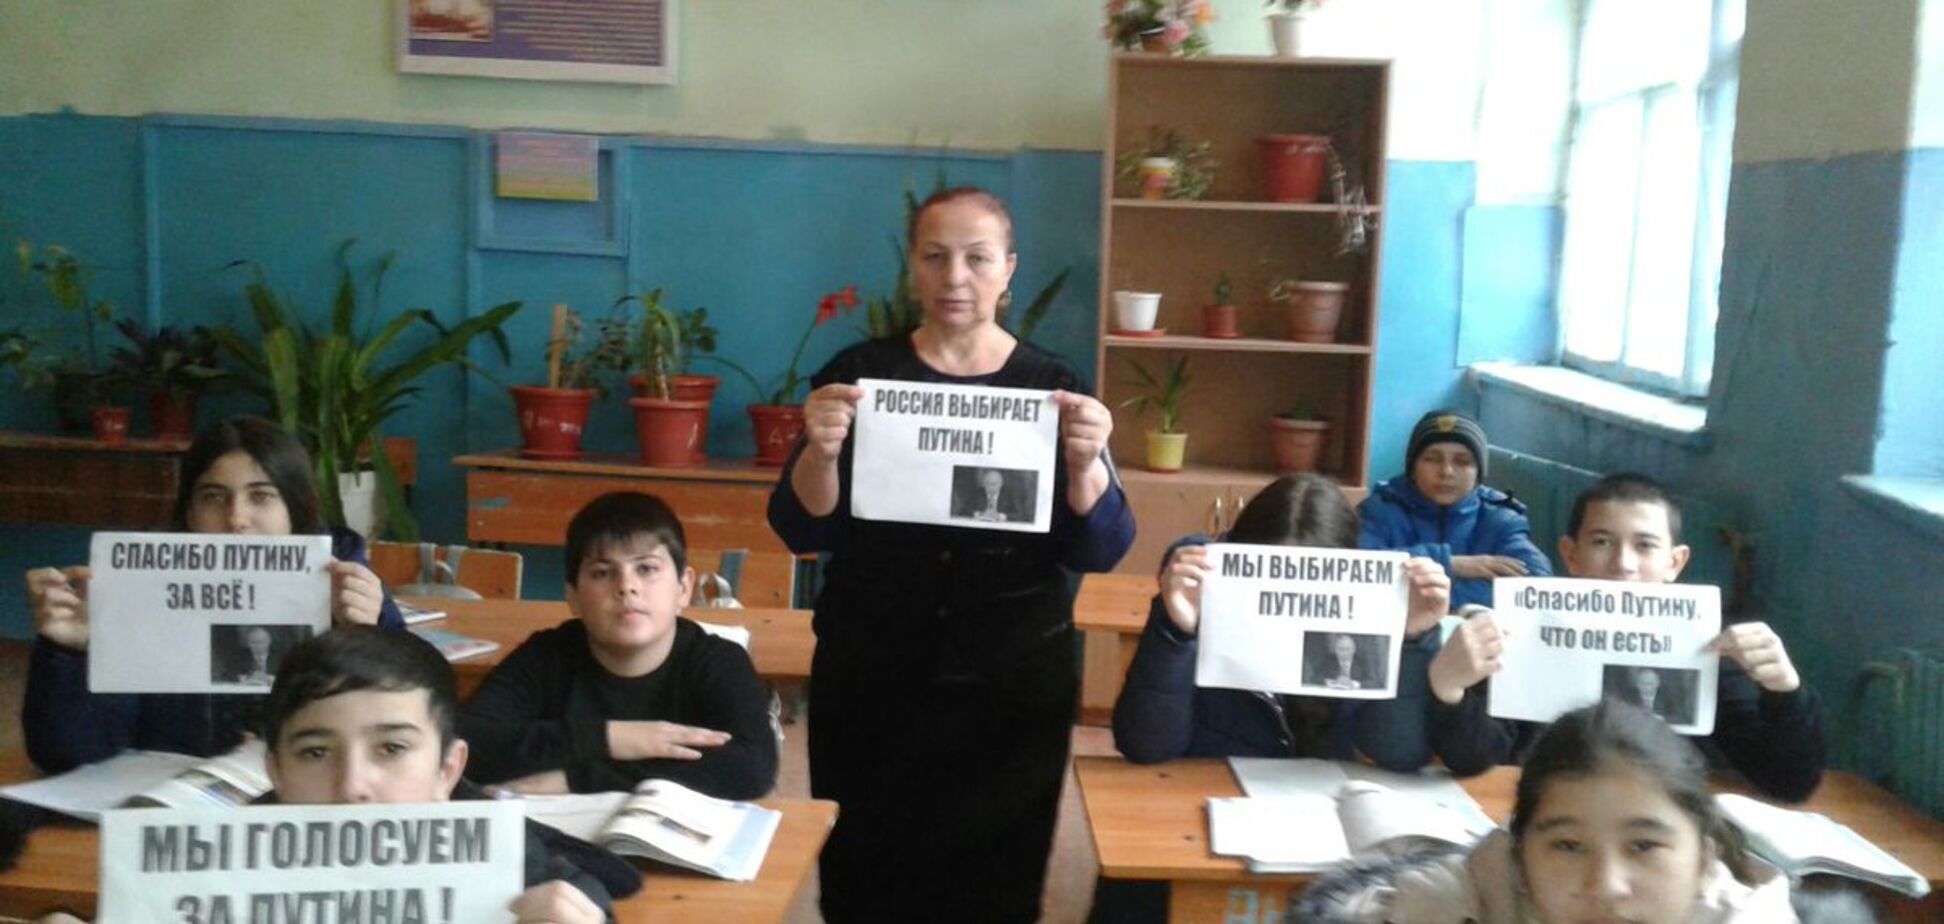 'Спасибо, за все!' Агитация школьников за Путина возмутила сеть